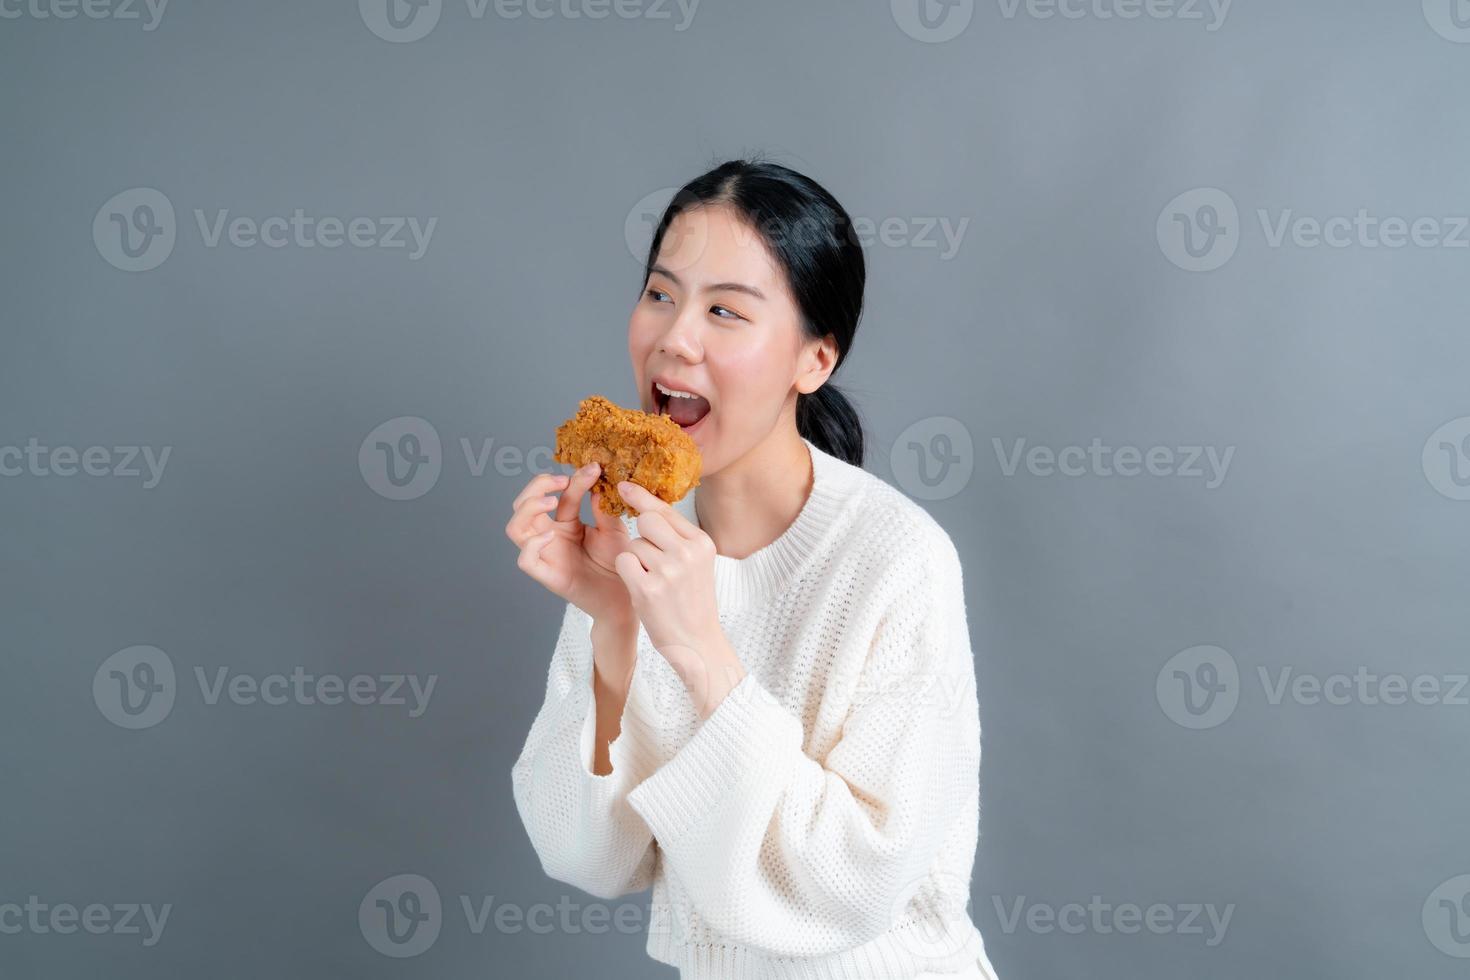 jonge aziatische vrouw die een trui draagt met een blij gezicht en geniet van het eten van gebakken kip op een grijze achtergrond foto